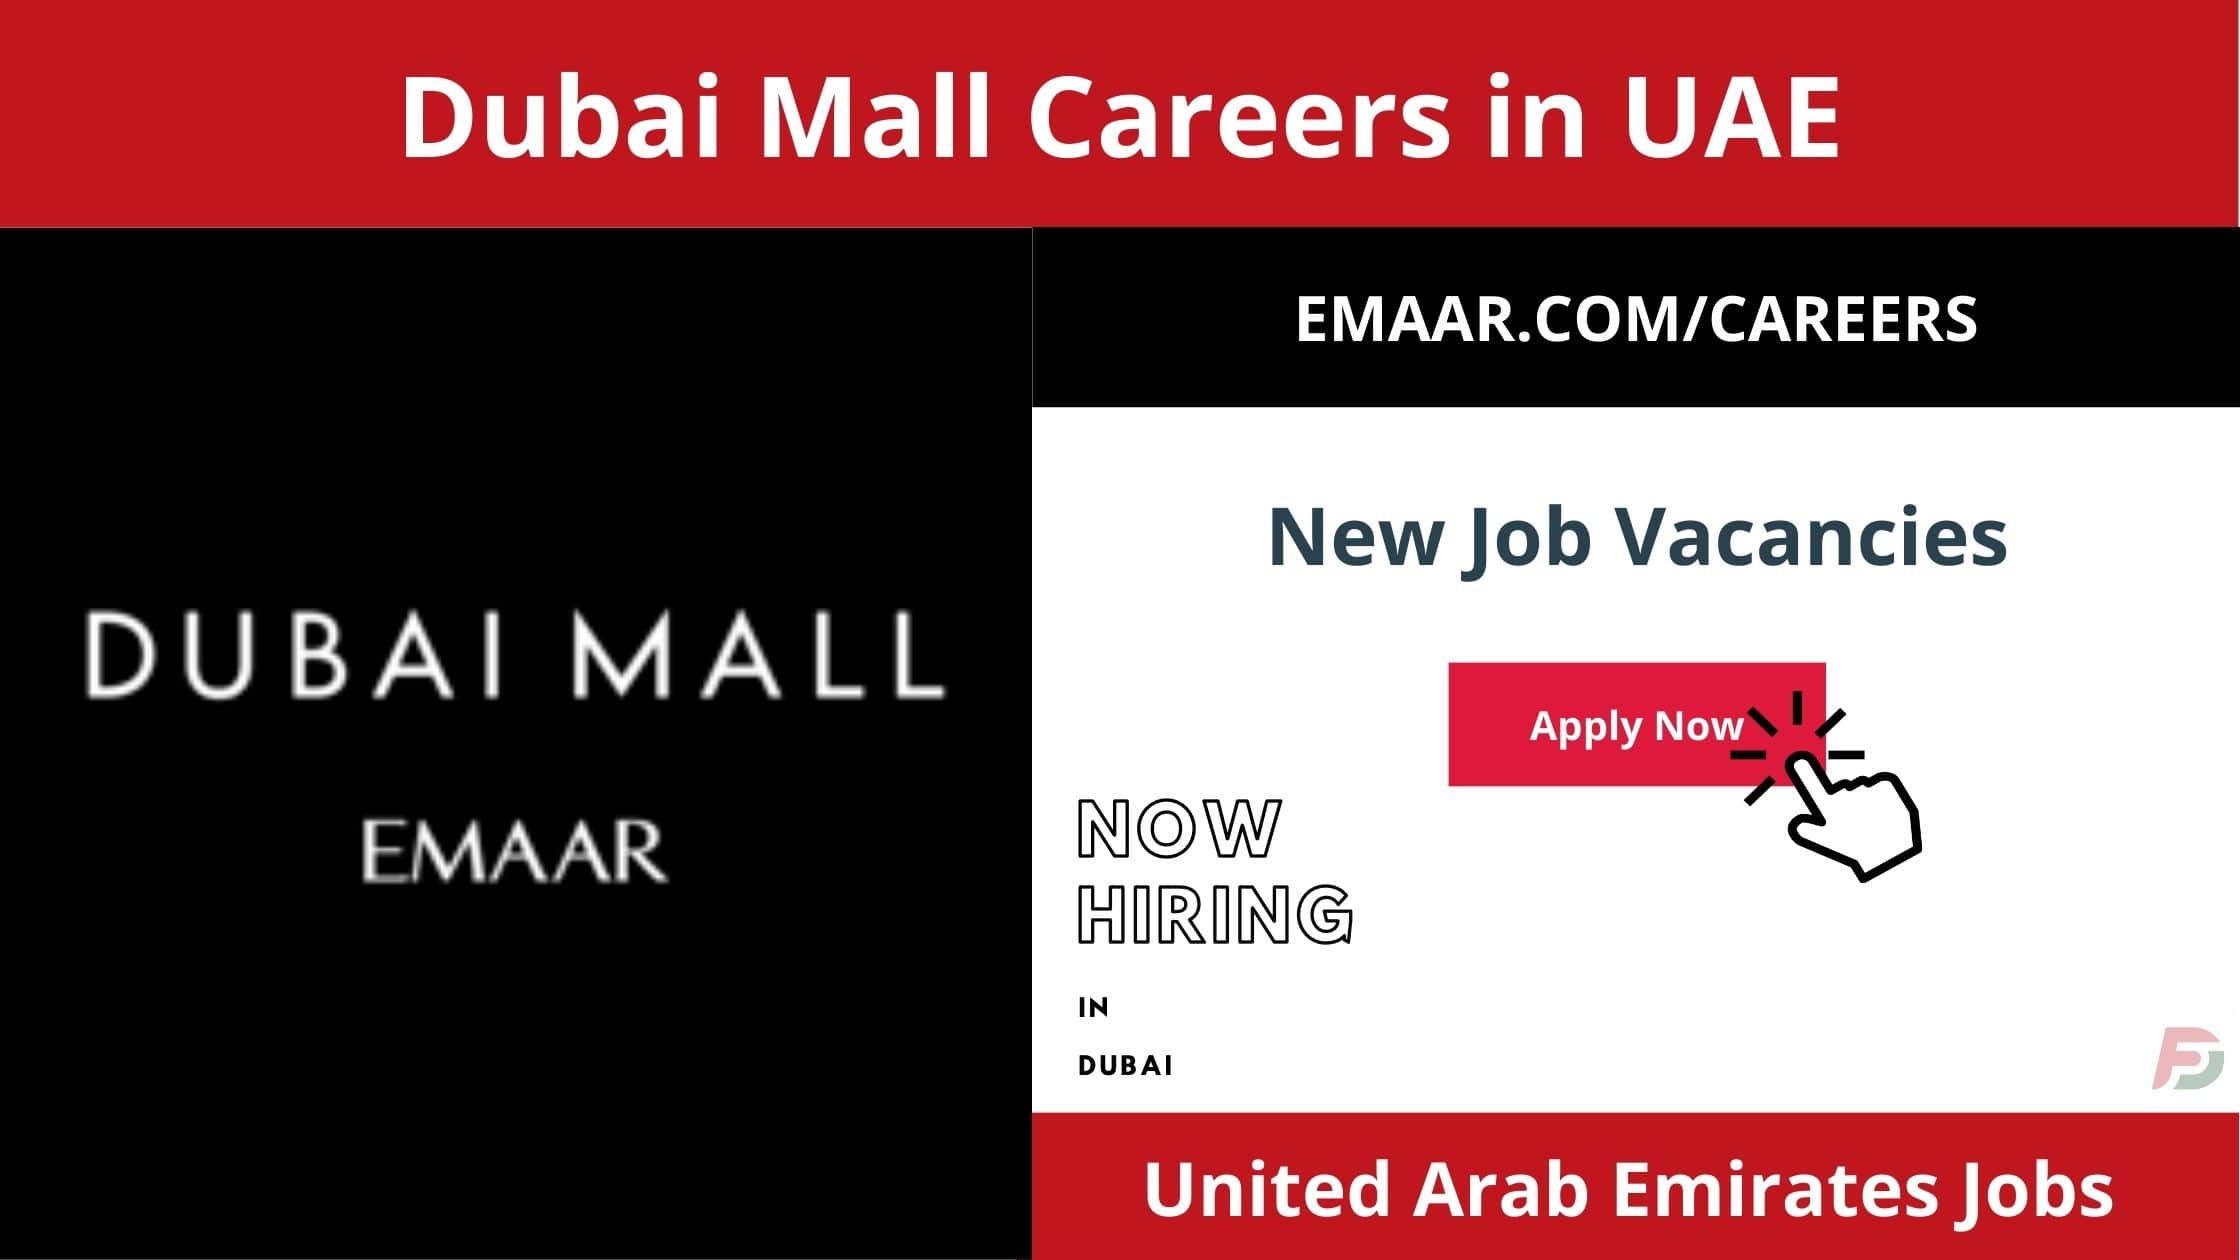 Dubai Mall Careers in Dubai